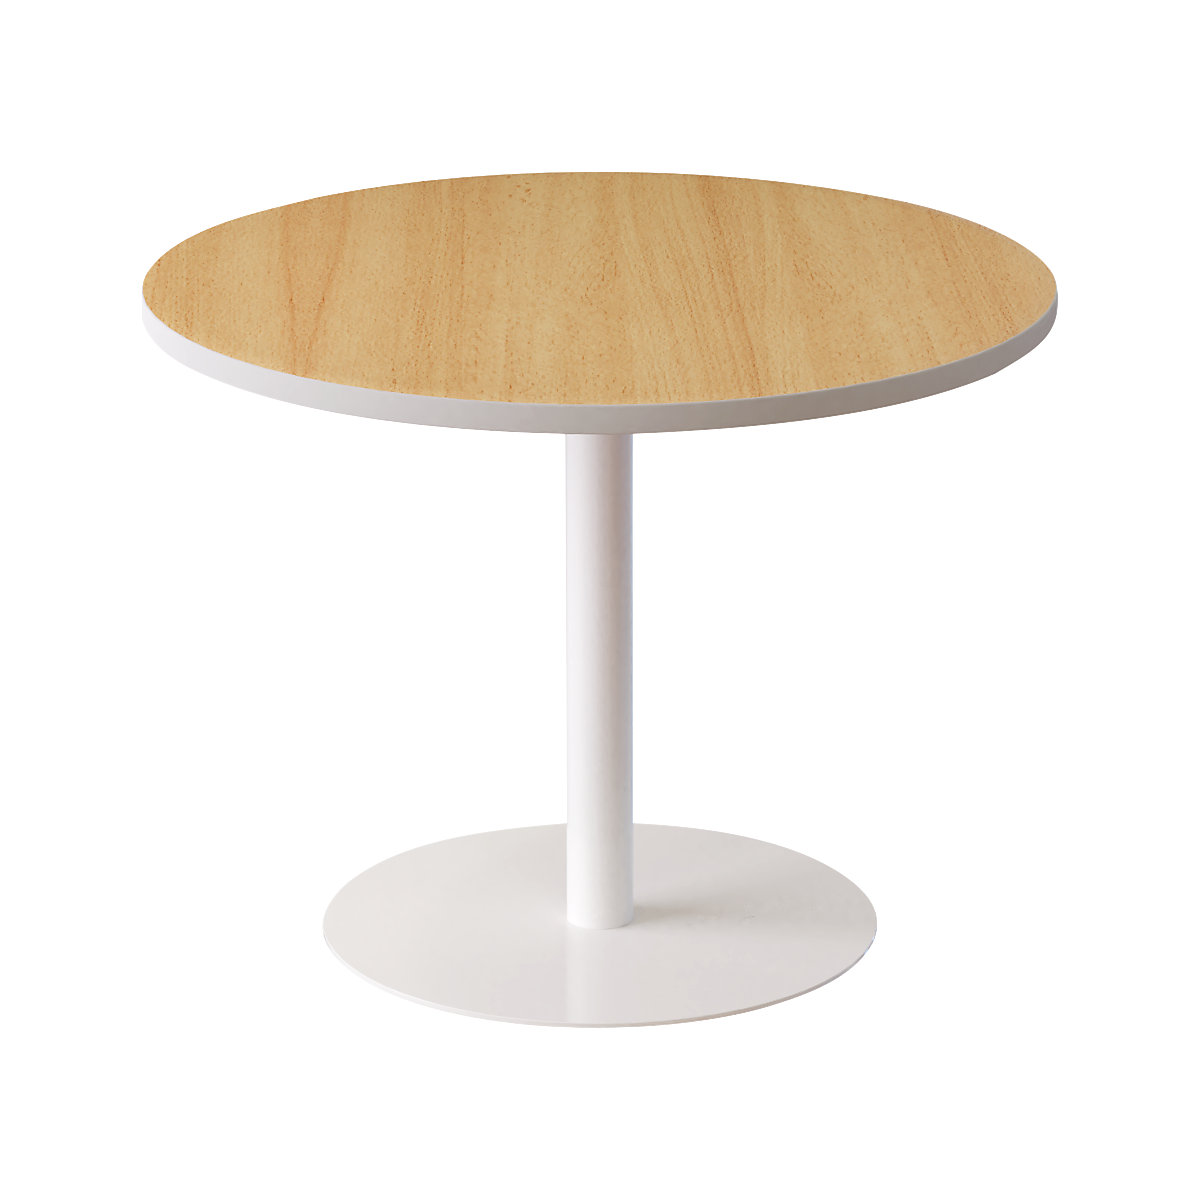 Társalgóasztal, kerek, Ø 800 mm, bükk-dekor